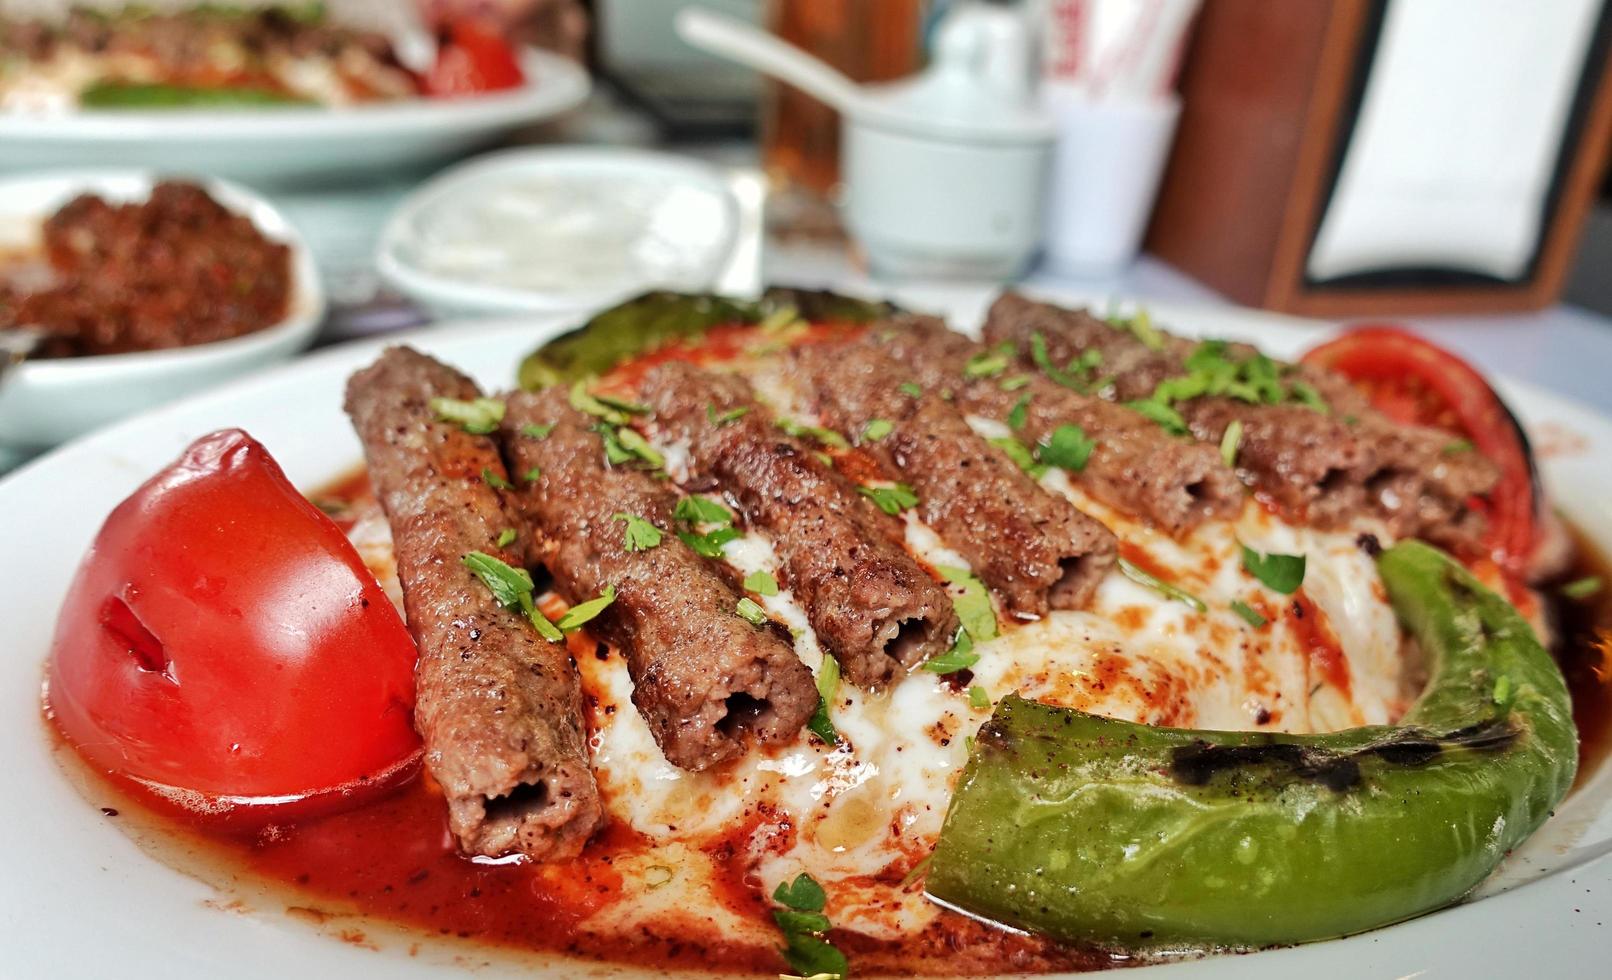 Turks traditioneel eten manisa kebab vlees foto